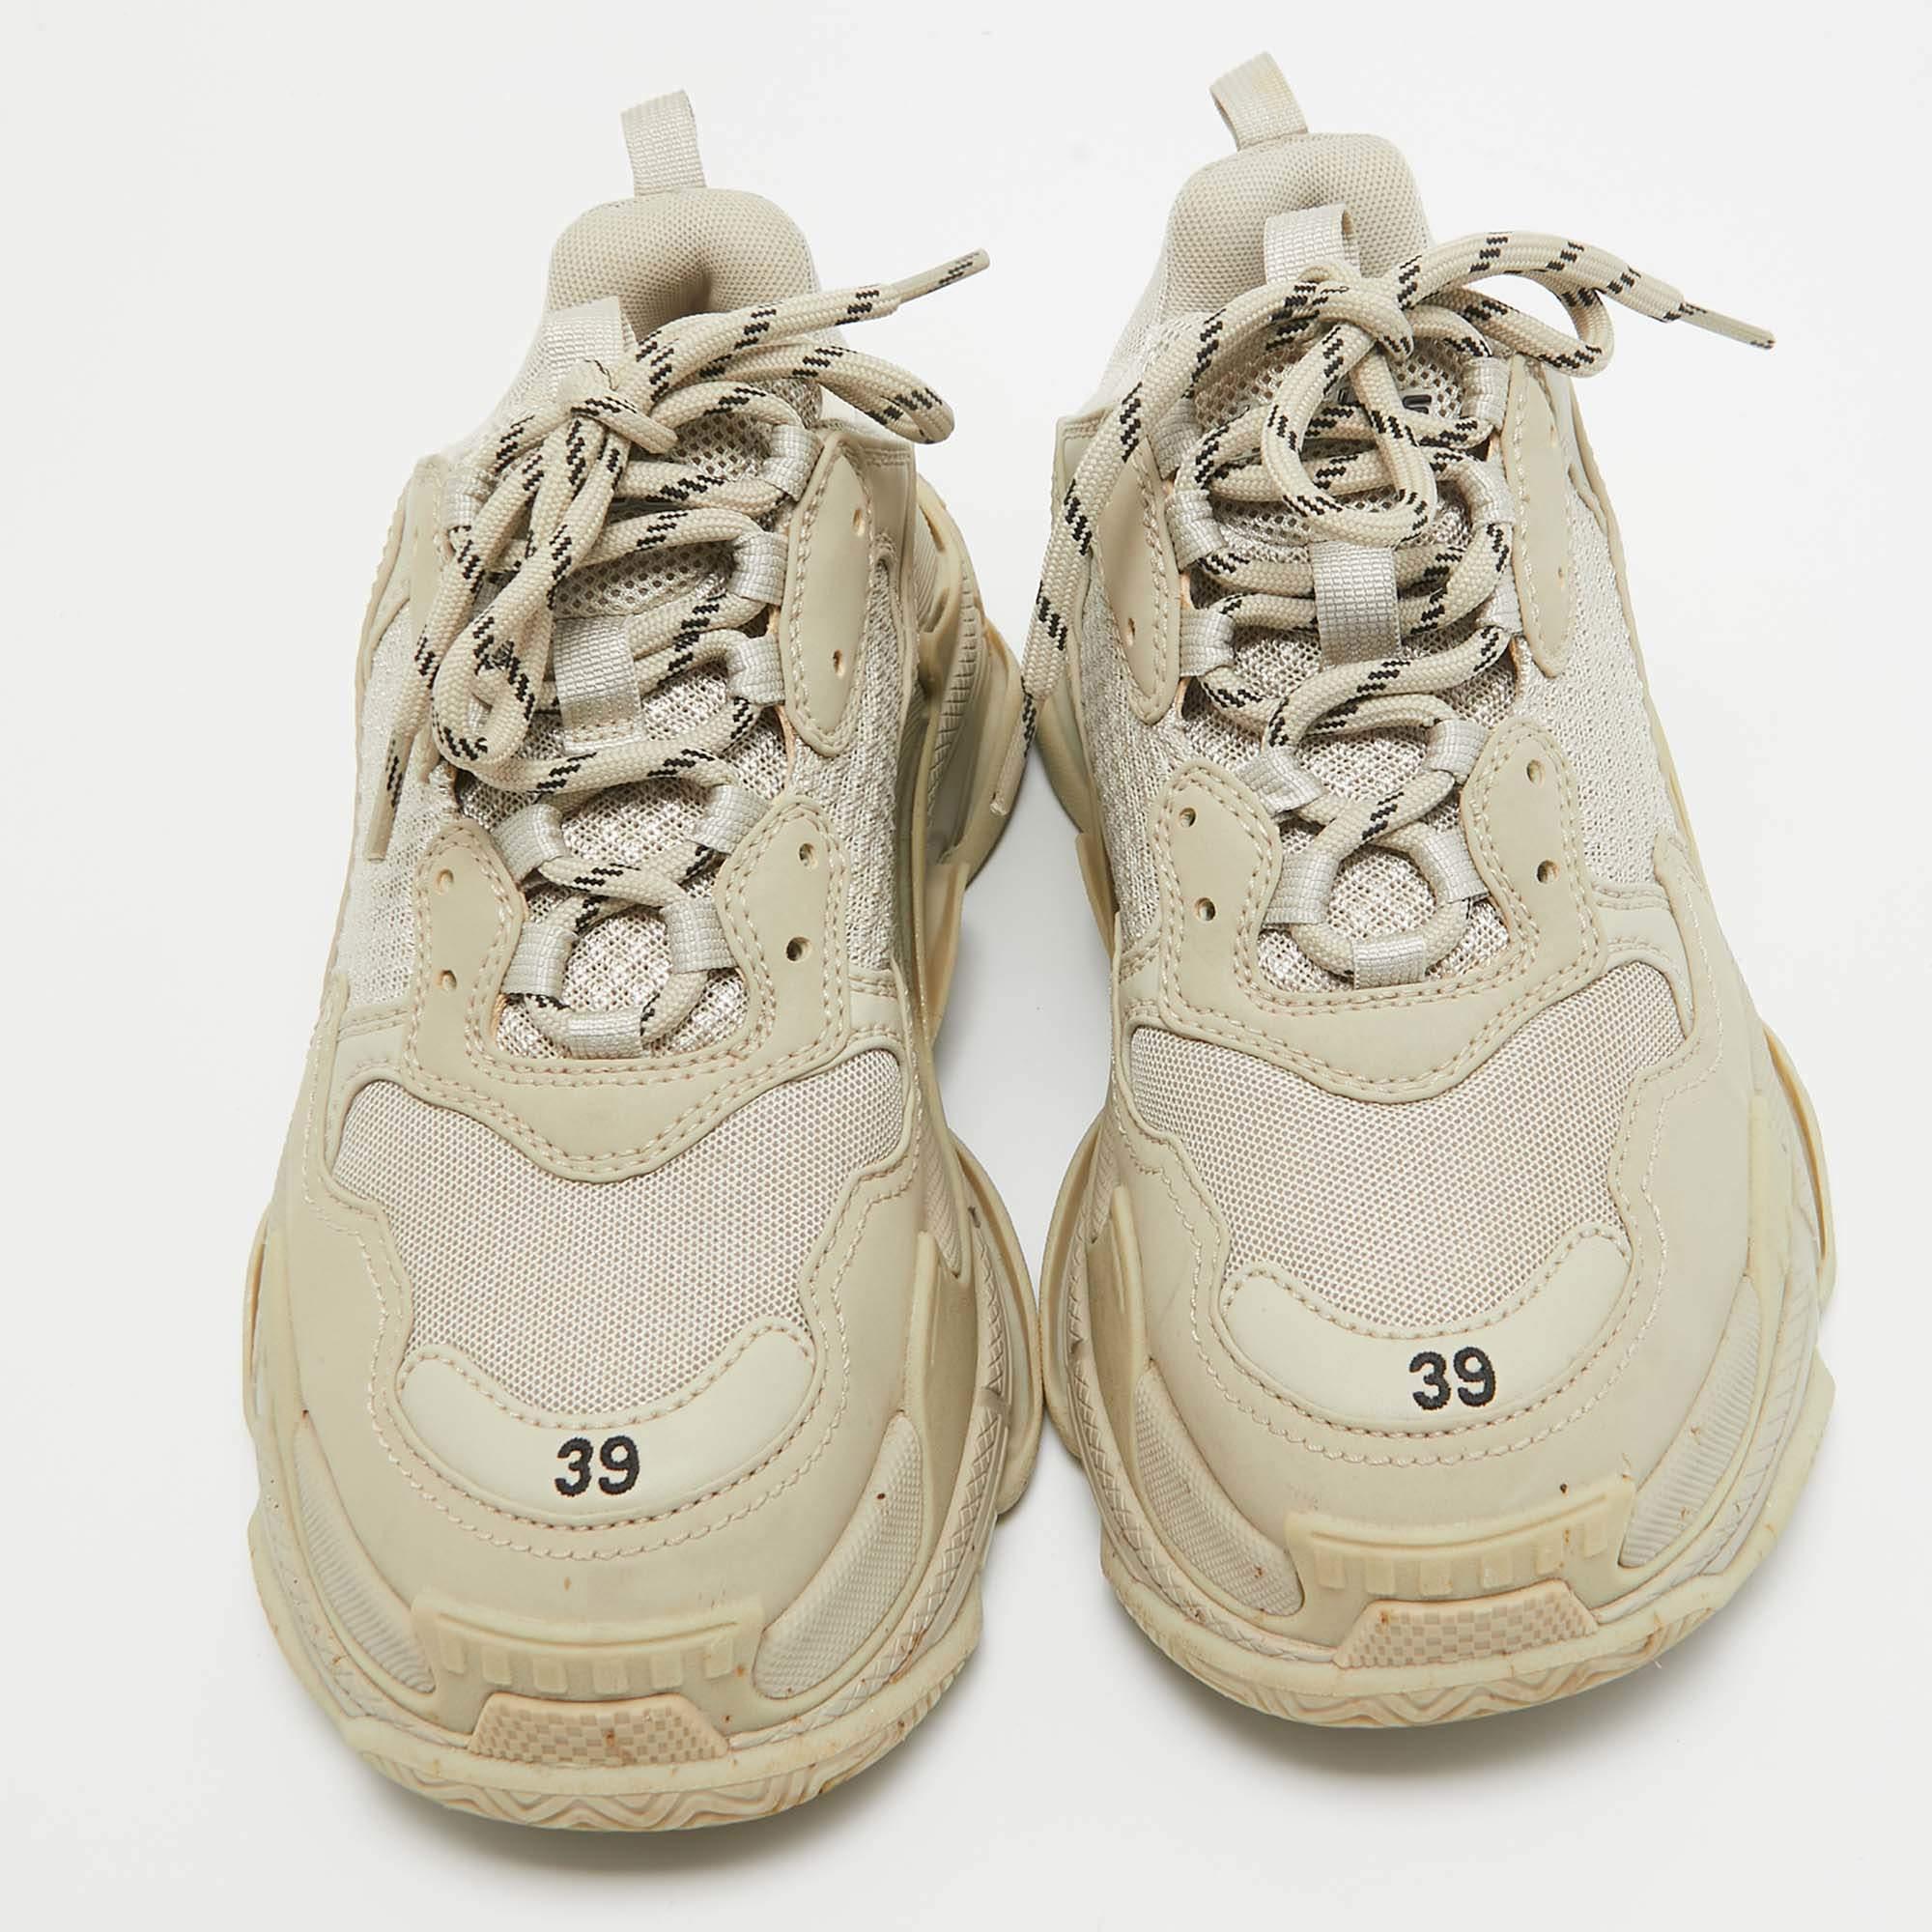 Diese Balenciaga-Sneaker sind strapazierfähig und verleihen Ihnen einen stilvollen, modernen Look. Die Gummisohle dieses Paares bietet Ihnen optimalen Halt beim Gehen. Die aus Leder und Mesh gefertigten Schuhe erhalten ein luxuriöses Update mit